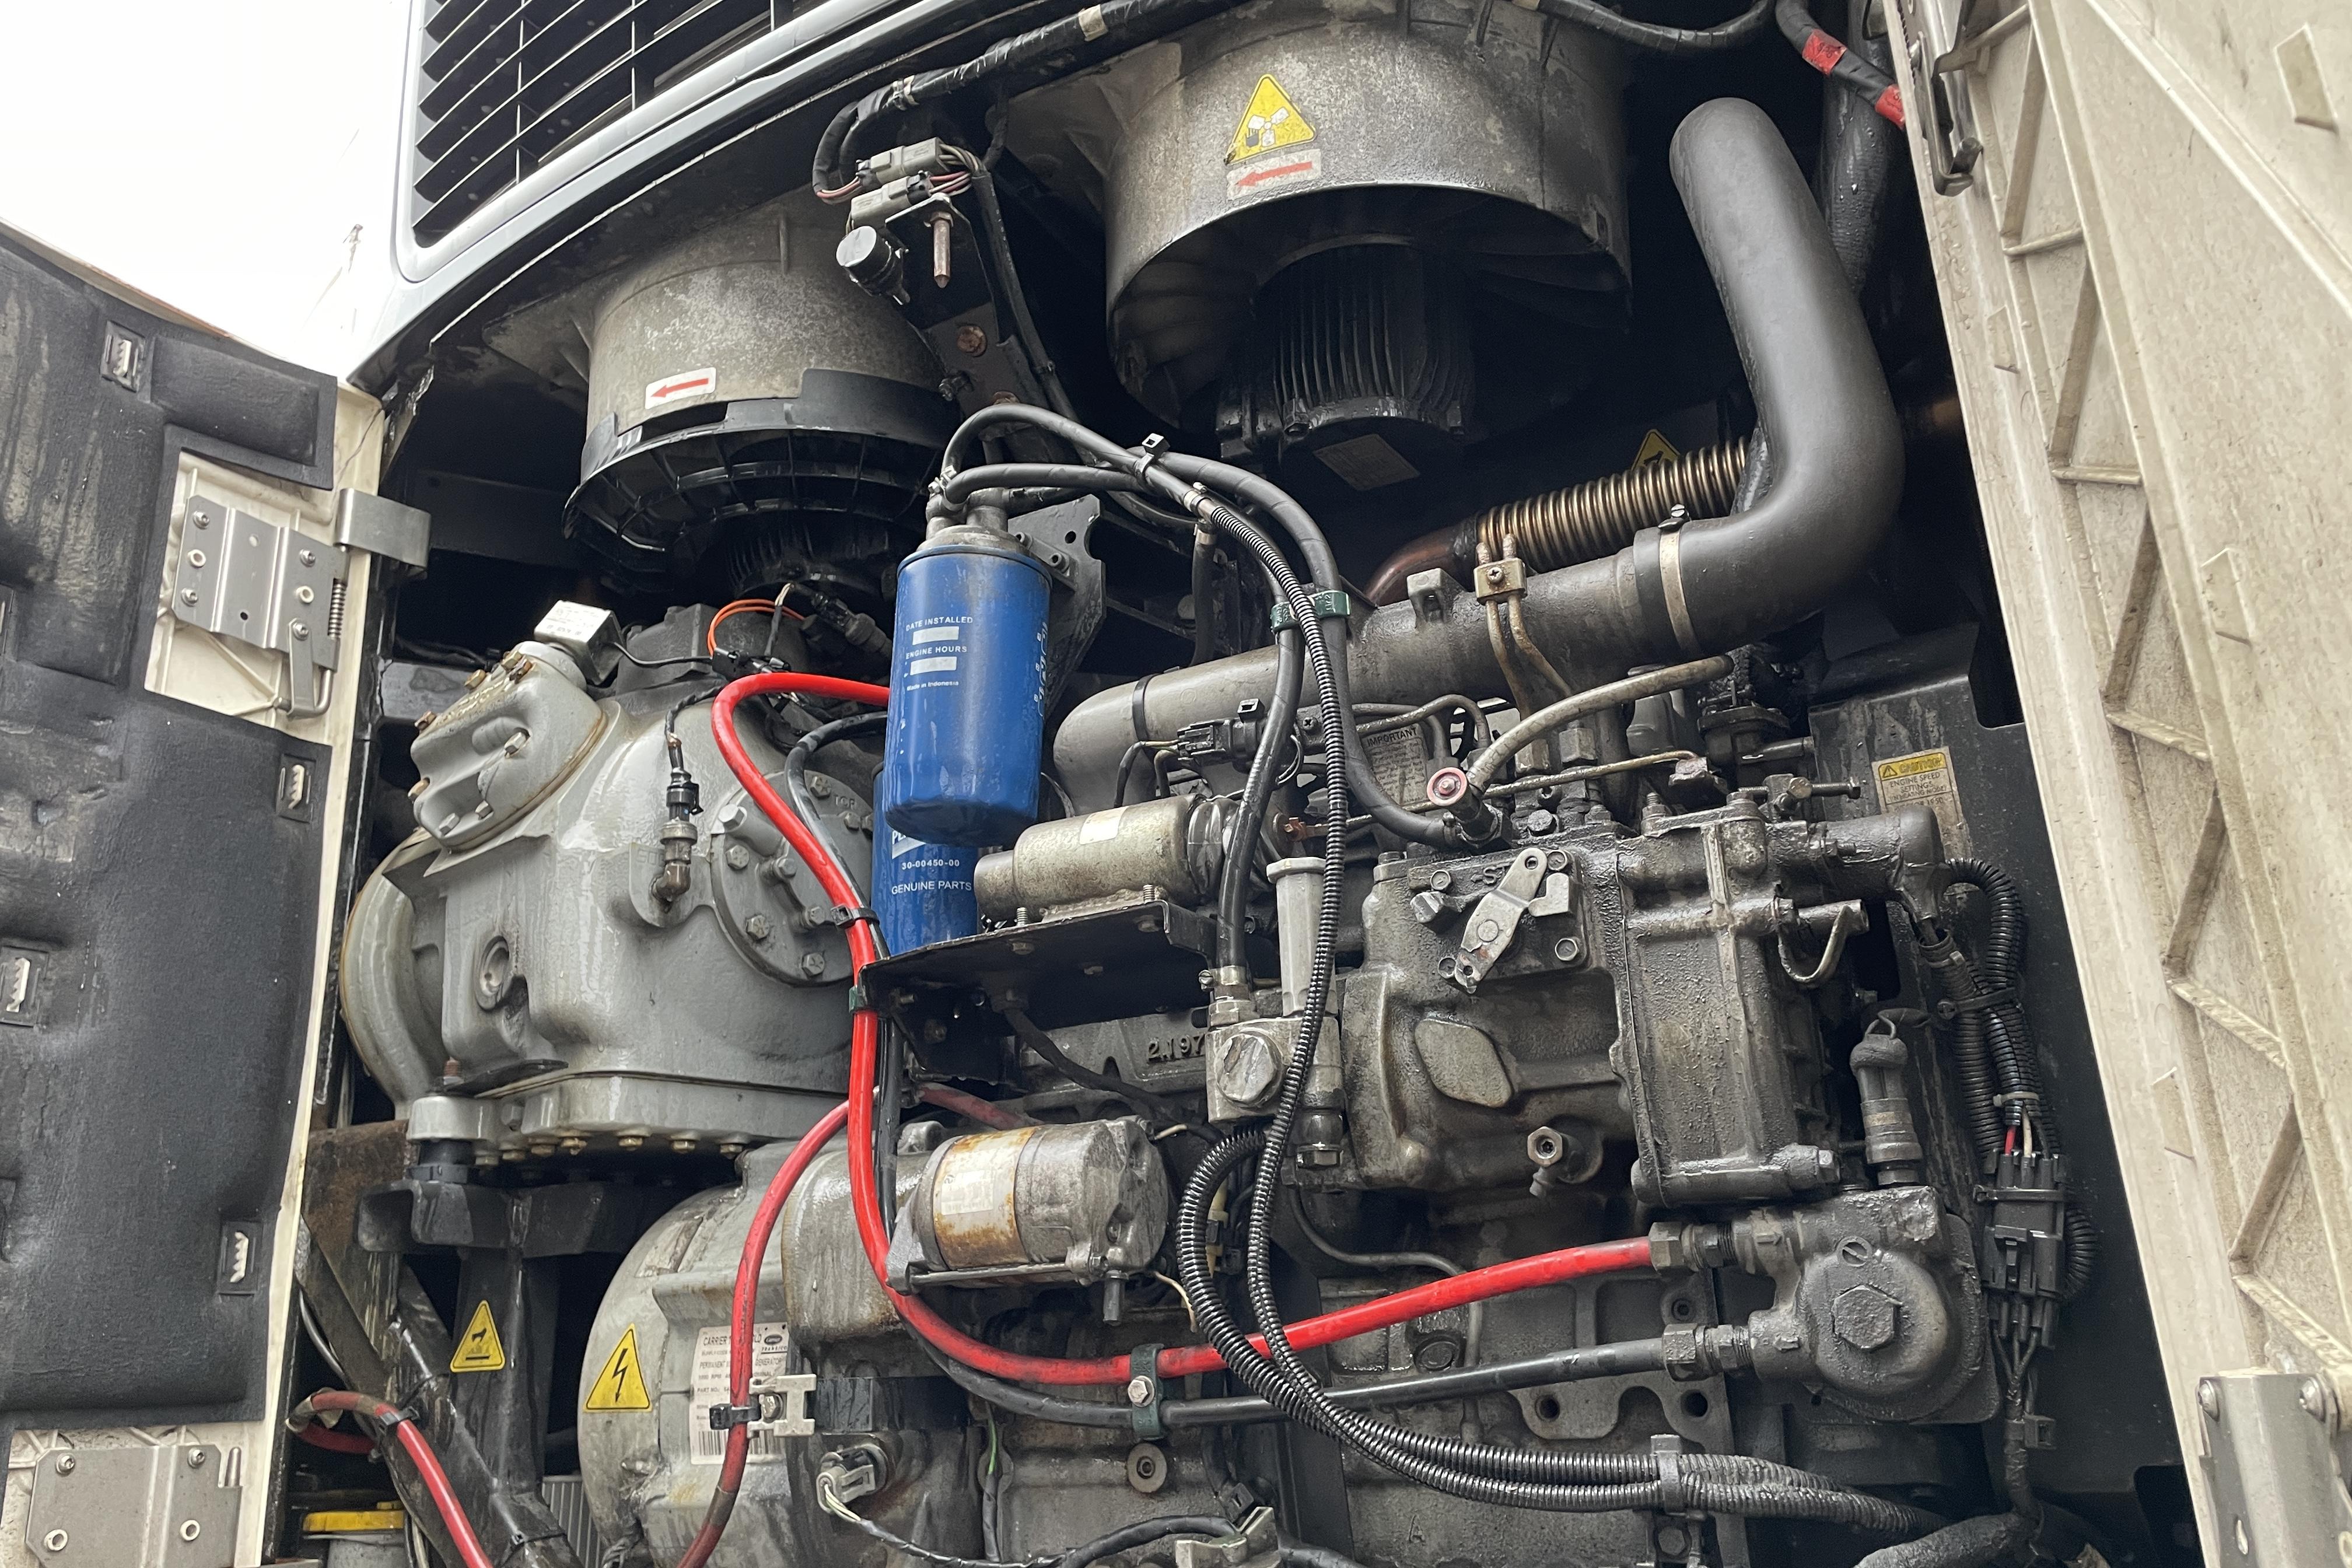 Scania R490LB MNB kylekipage - 922 040 km - Automatyczna - 2015